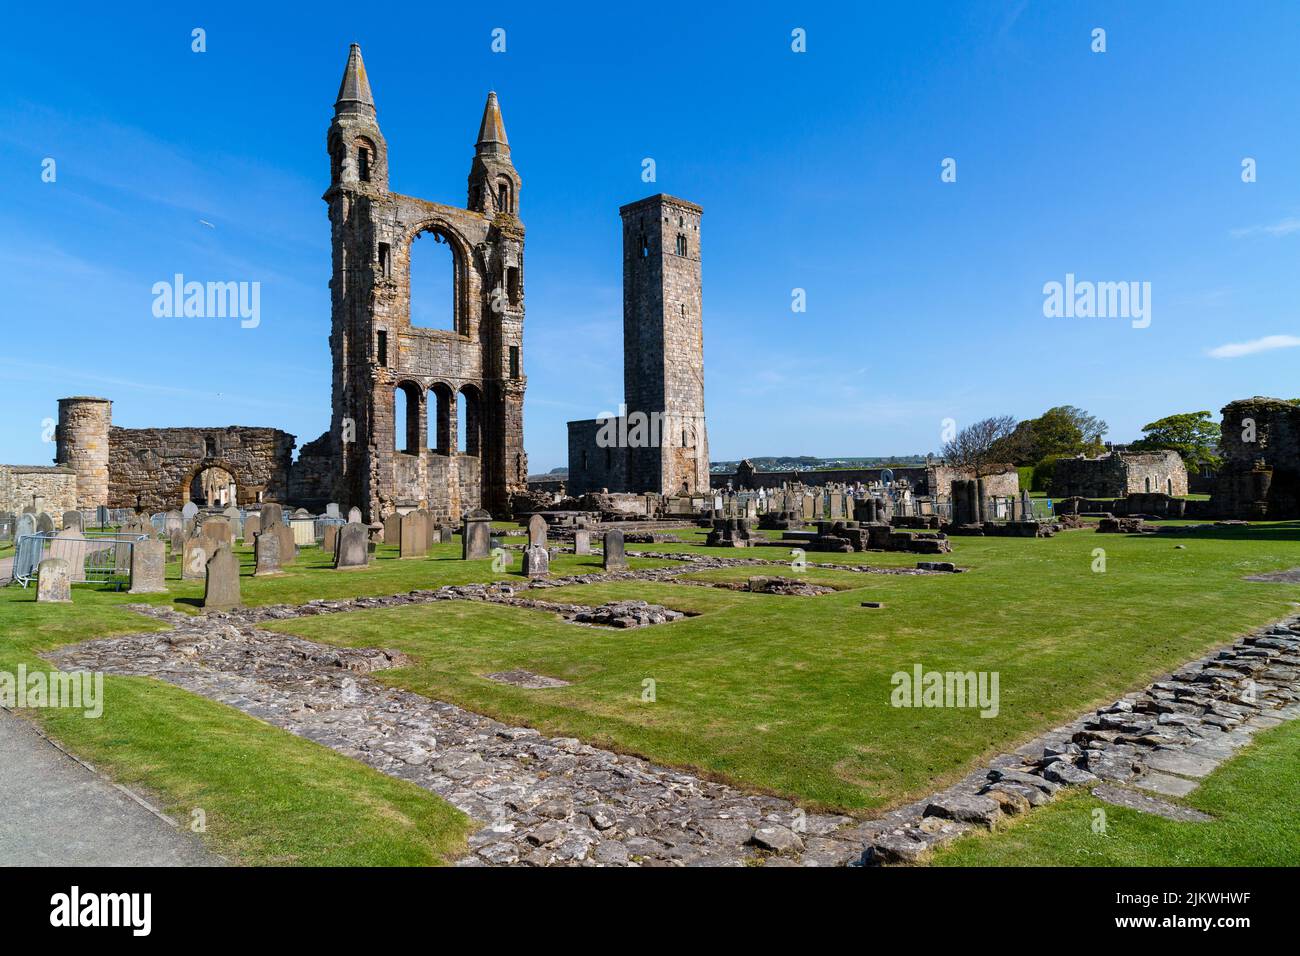 La torre est della Cattedrale di Sant'Andrews e la Torre di Santa regola. St Andrews, Fife, Scozia, Regno Unito. Foto Stock